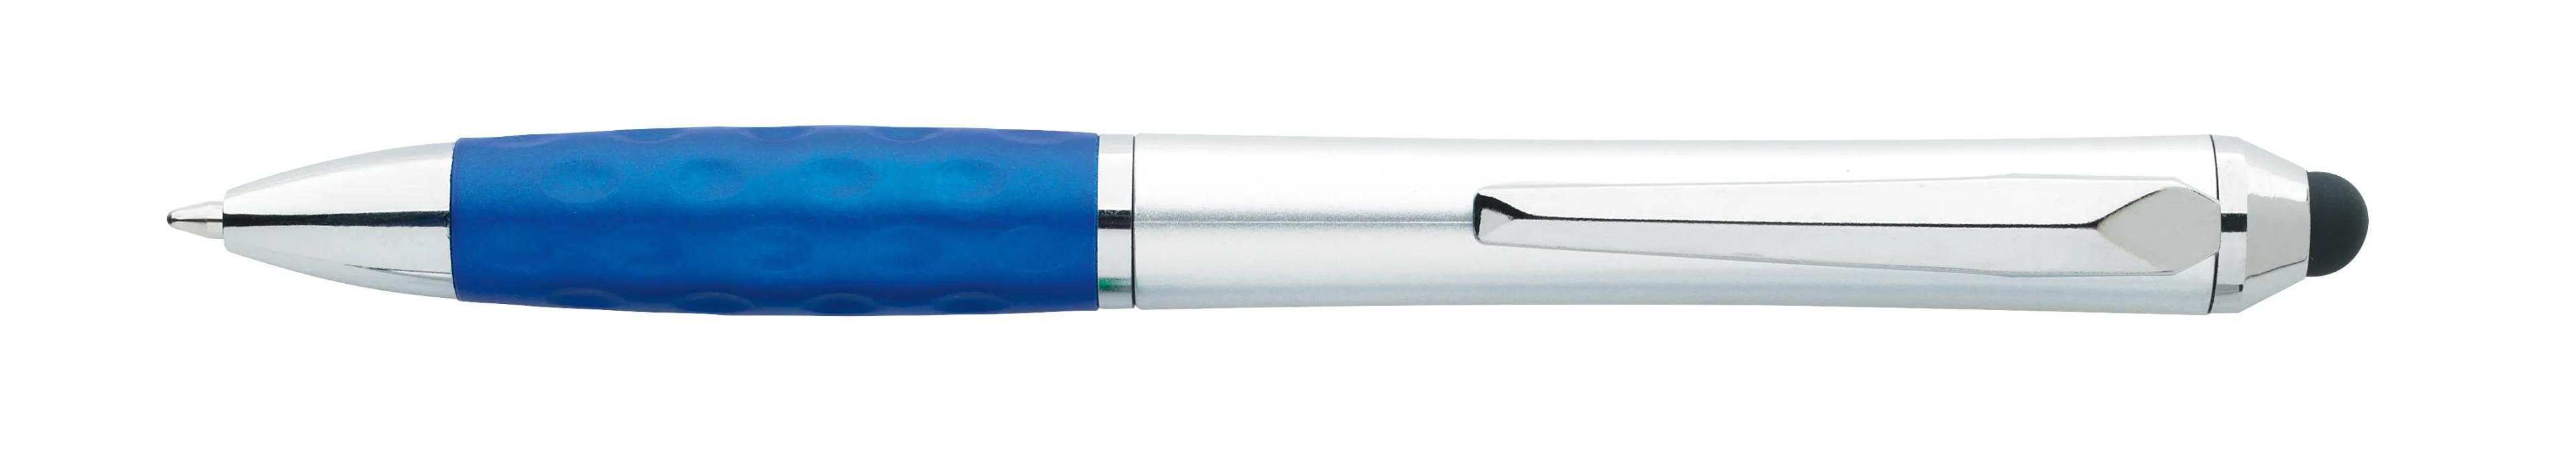 Tev Silver Stylus Pen 18 of 55